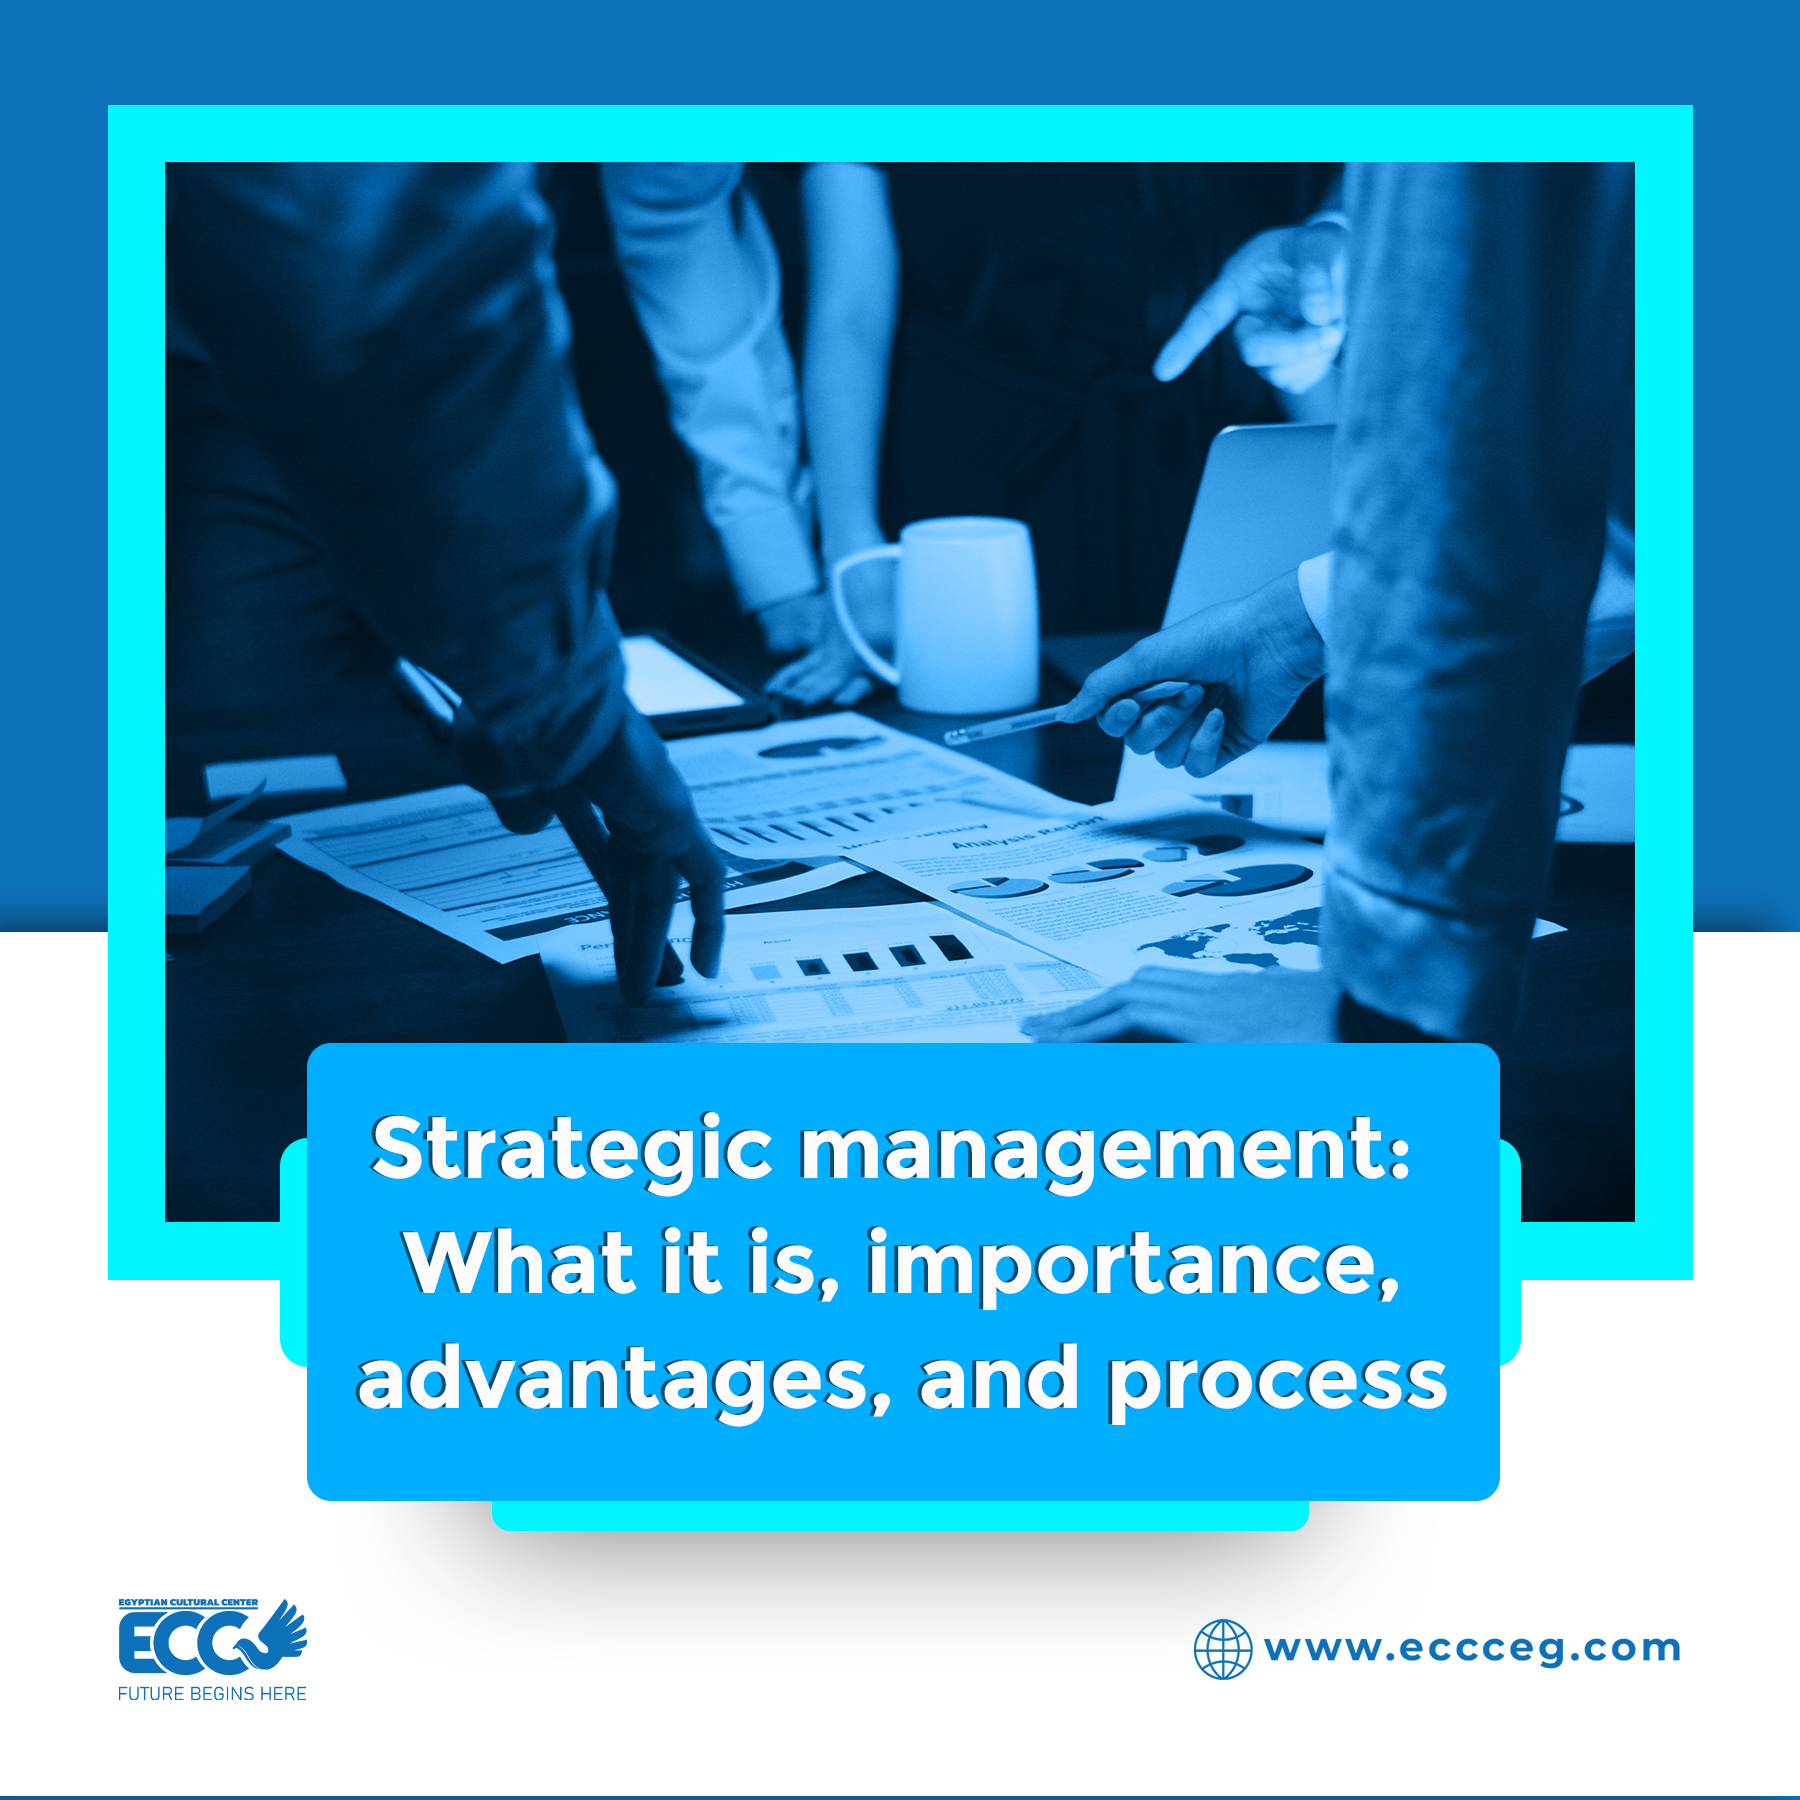 Strategic management process: What it is, importance, advantages